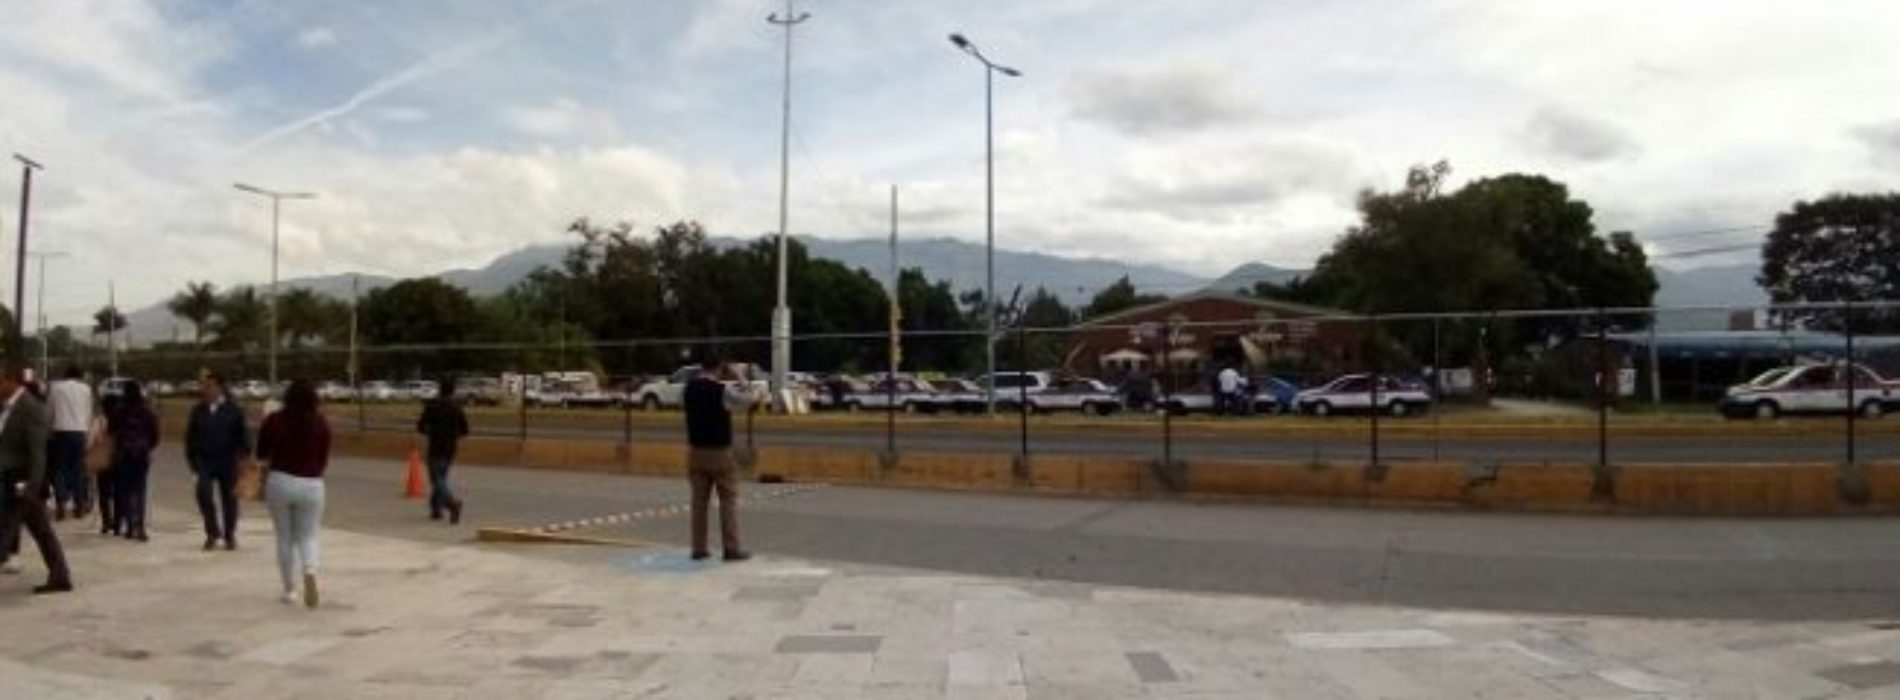 Taxistas del sindicato Libertad pegan calcomanías en sus
unidades